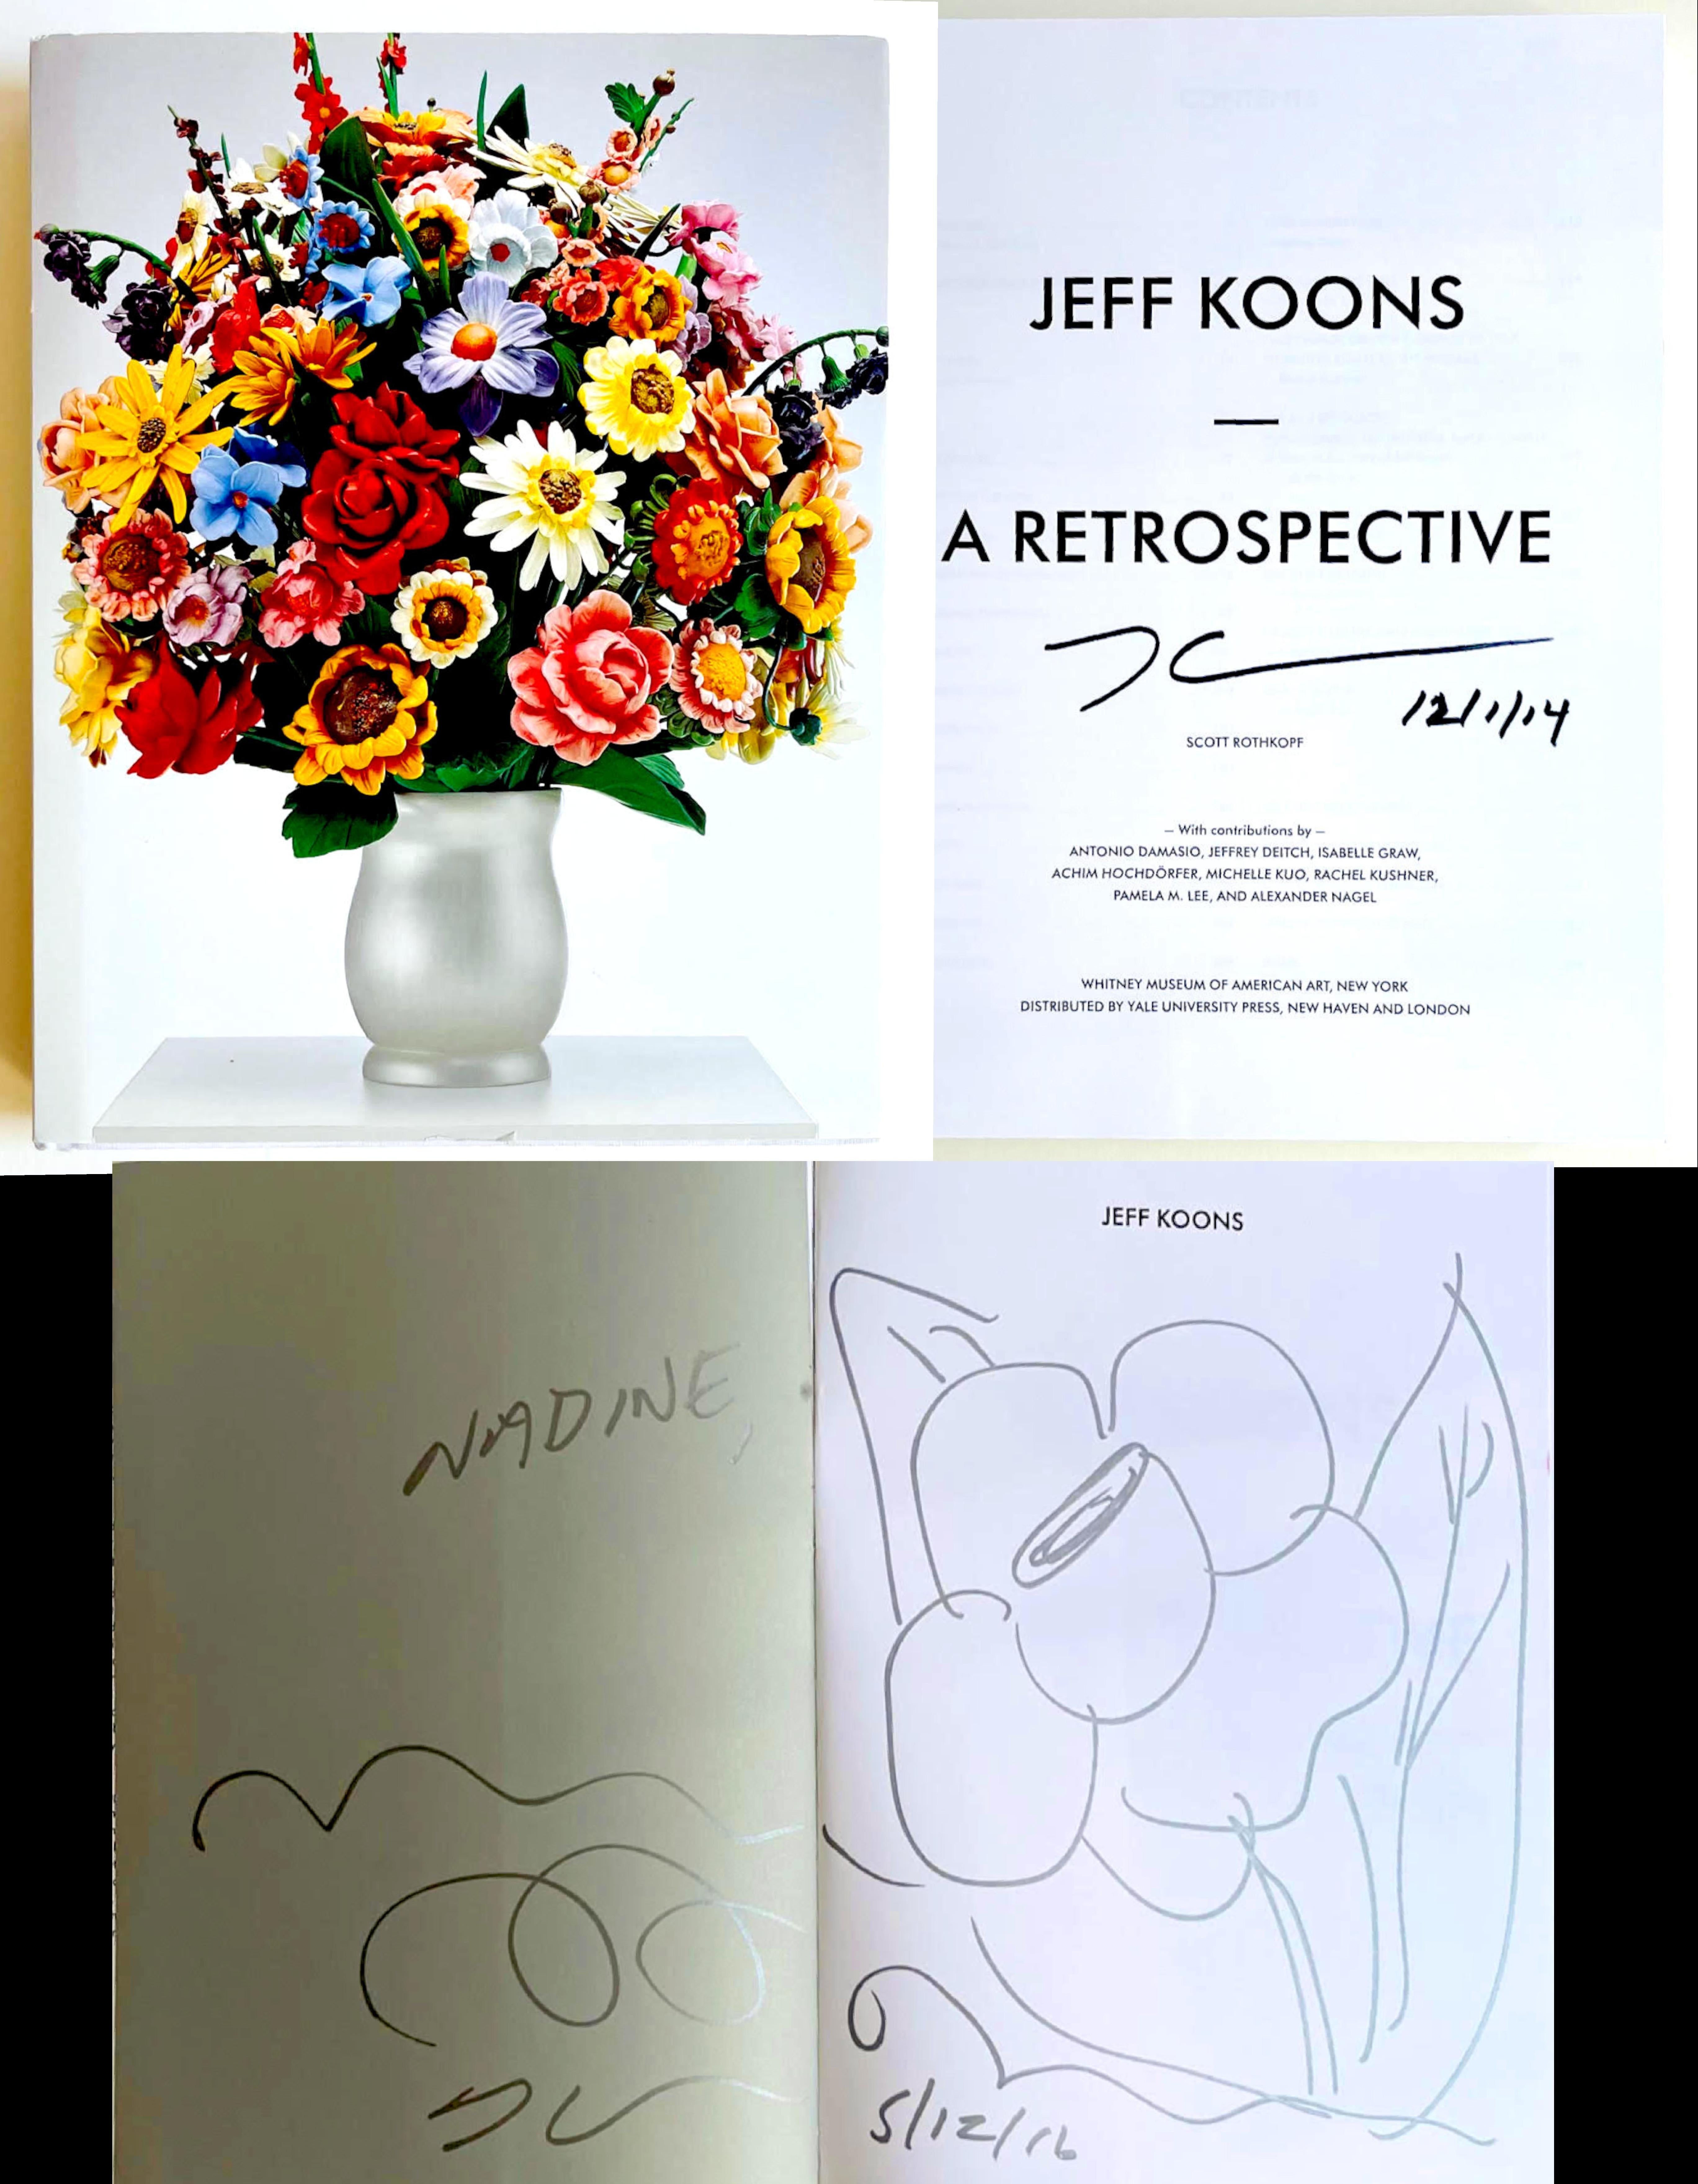 Dessin floral original signé deux fois relié dans la monographie du Whitney Museum - Art de Jeff Koons